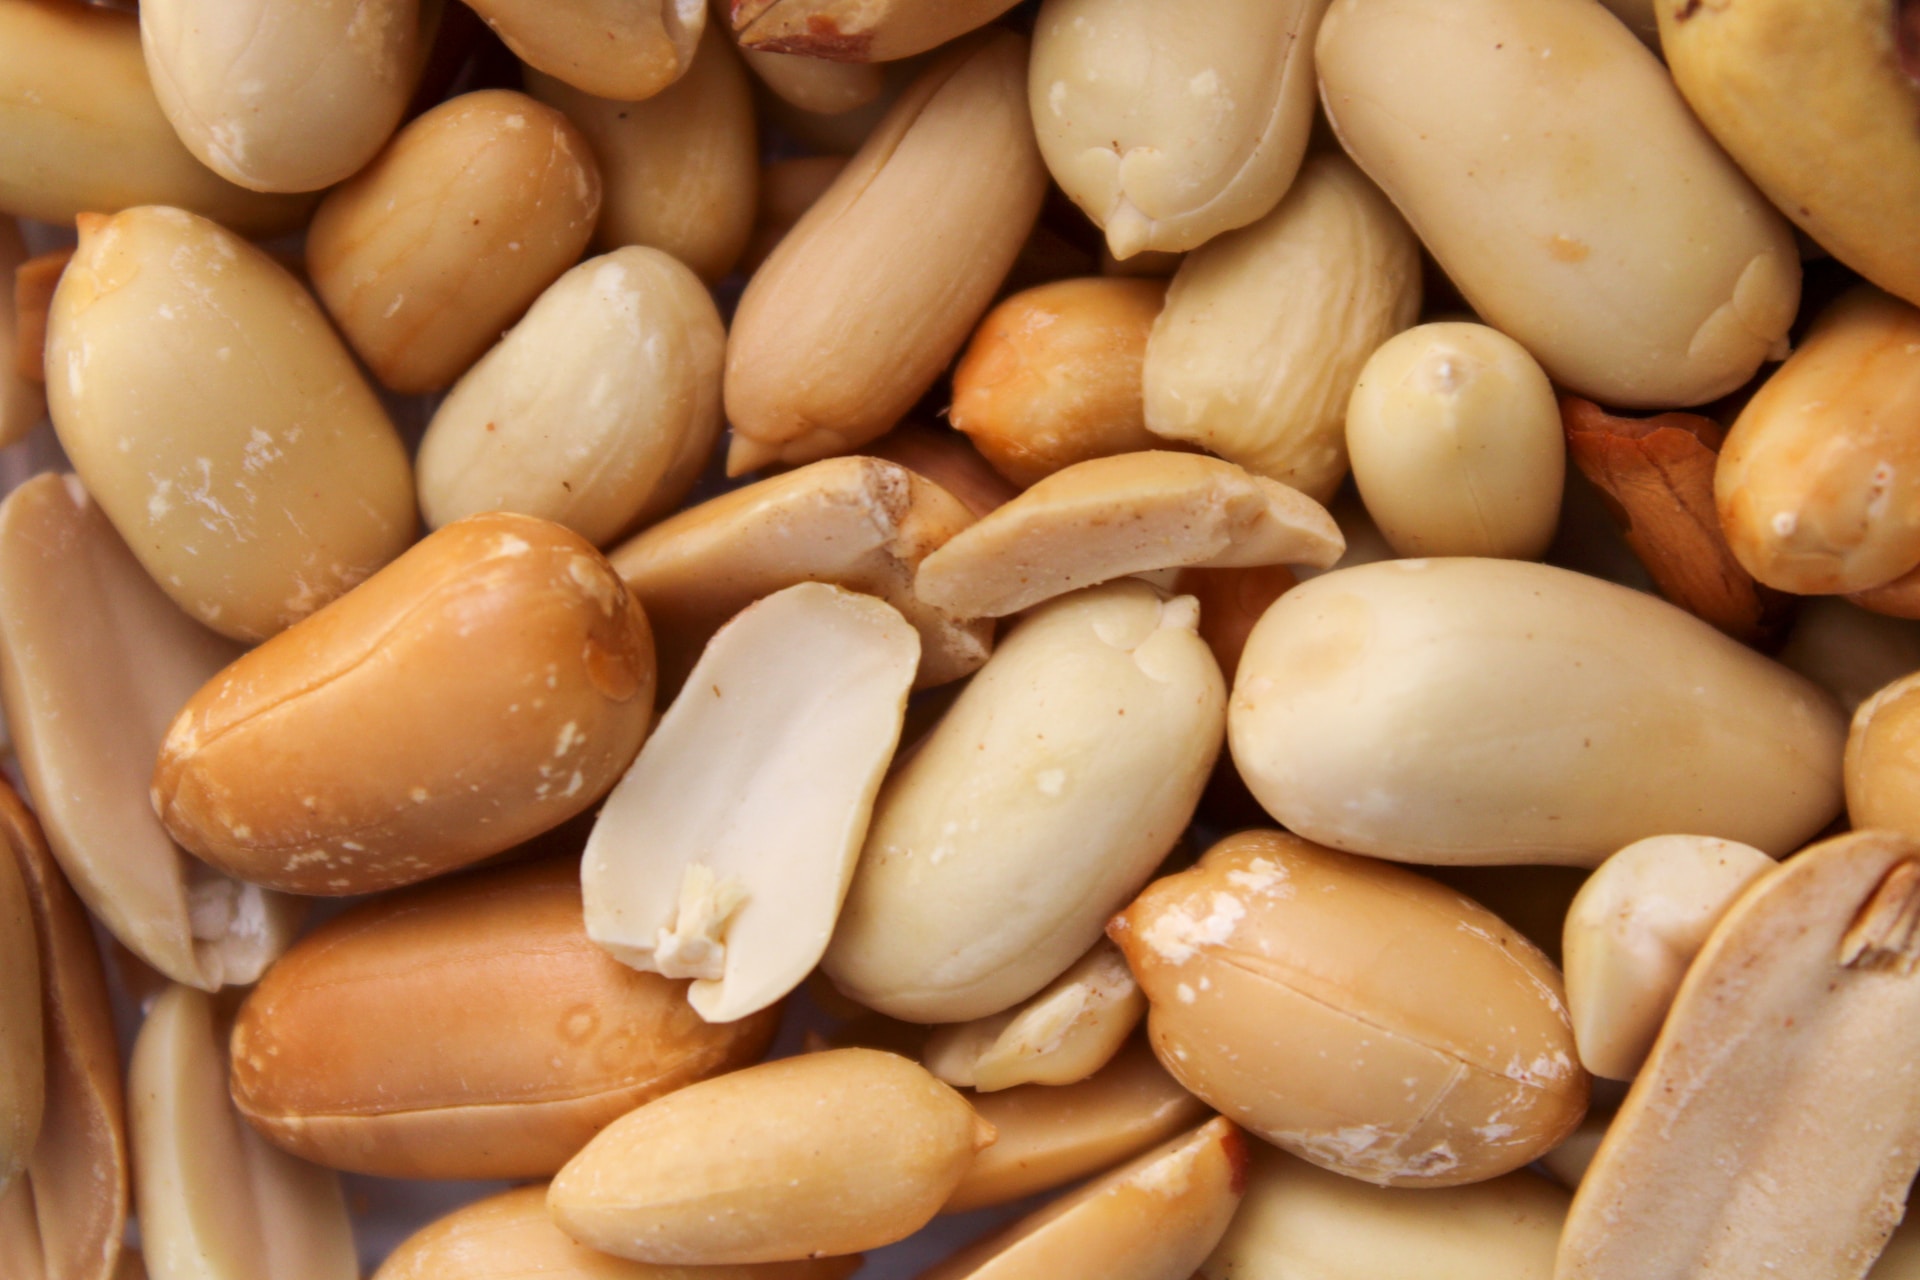 Are Peanuts Gluten Free?